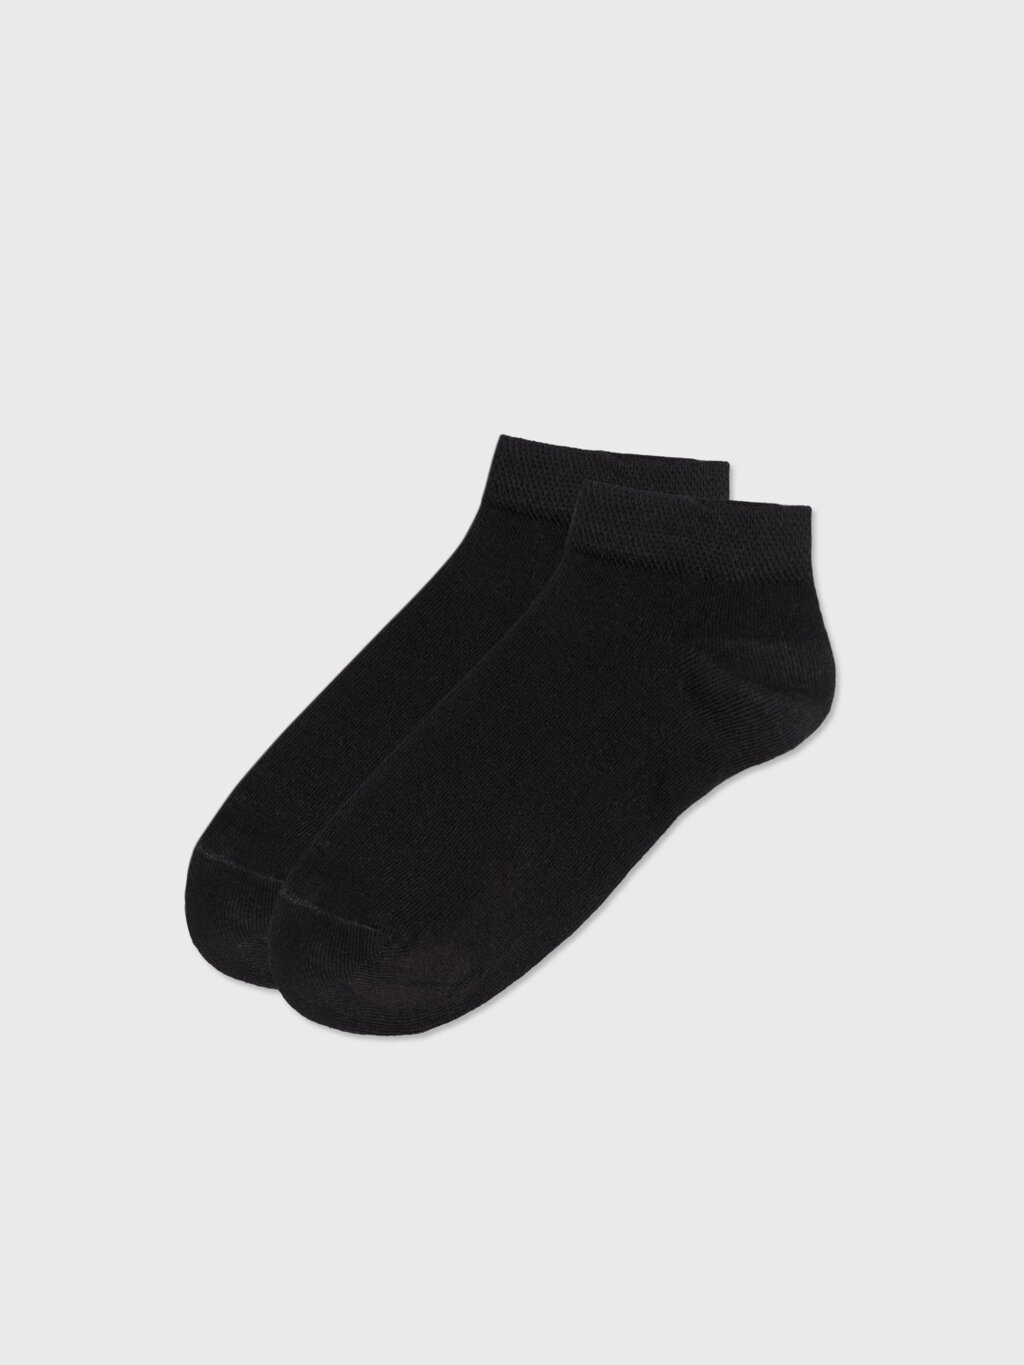 Носки укороченные черные (35-37) от компании Admi - фото 1